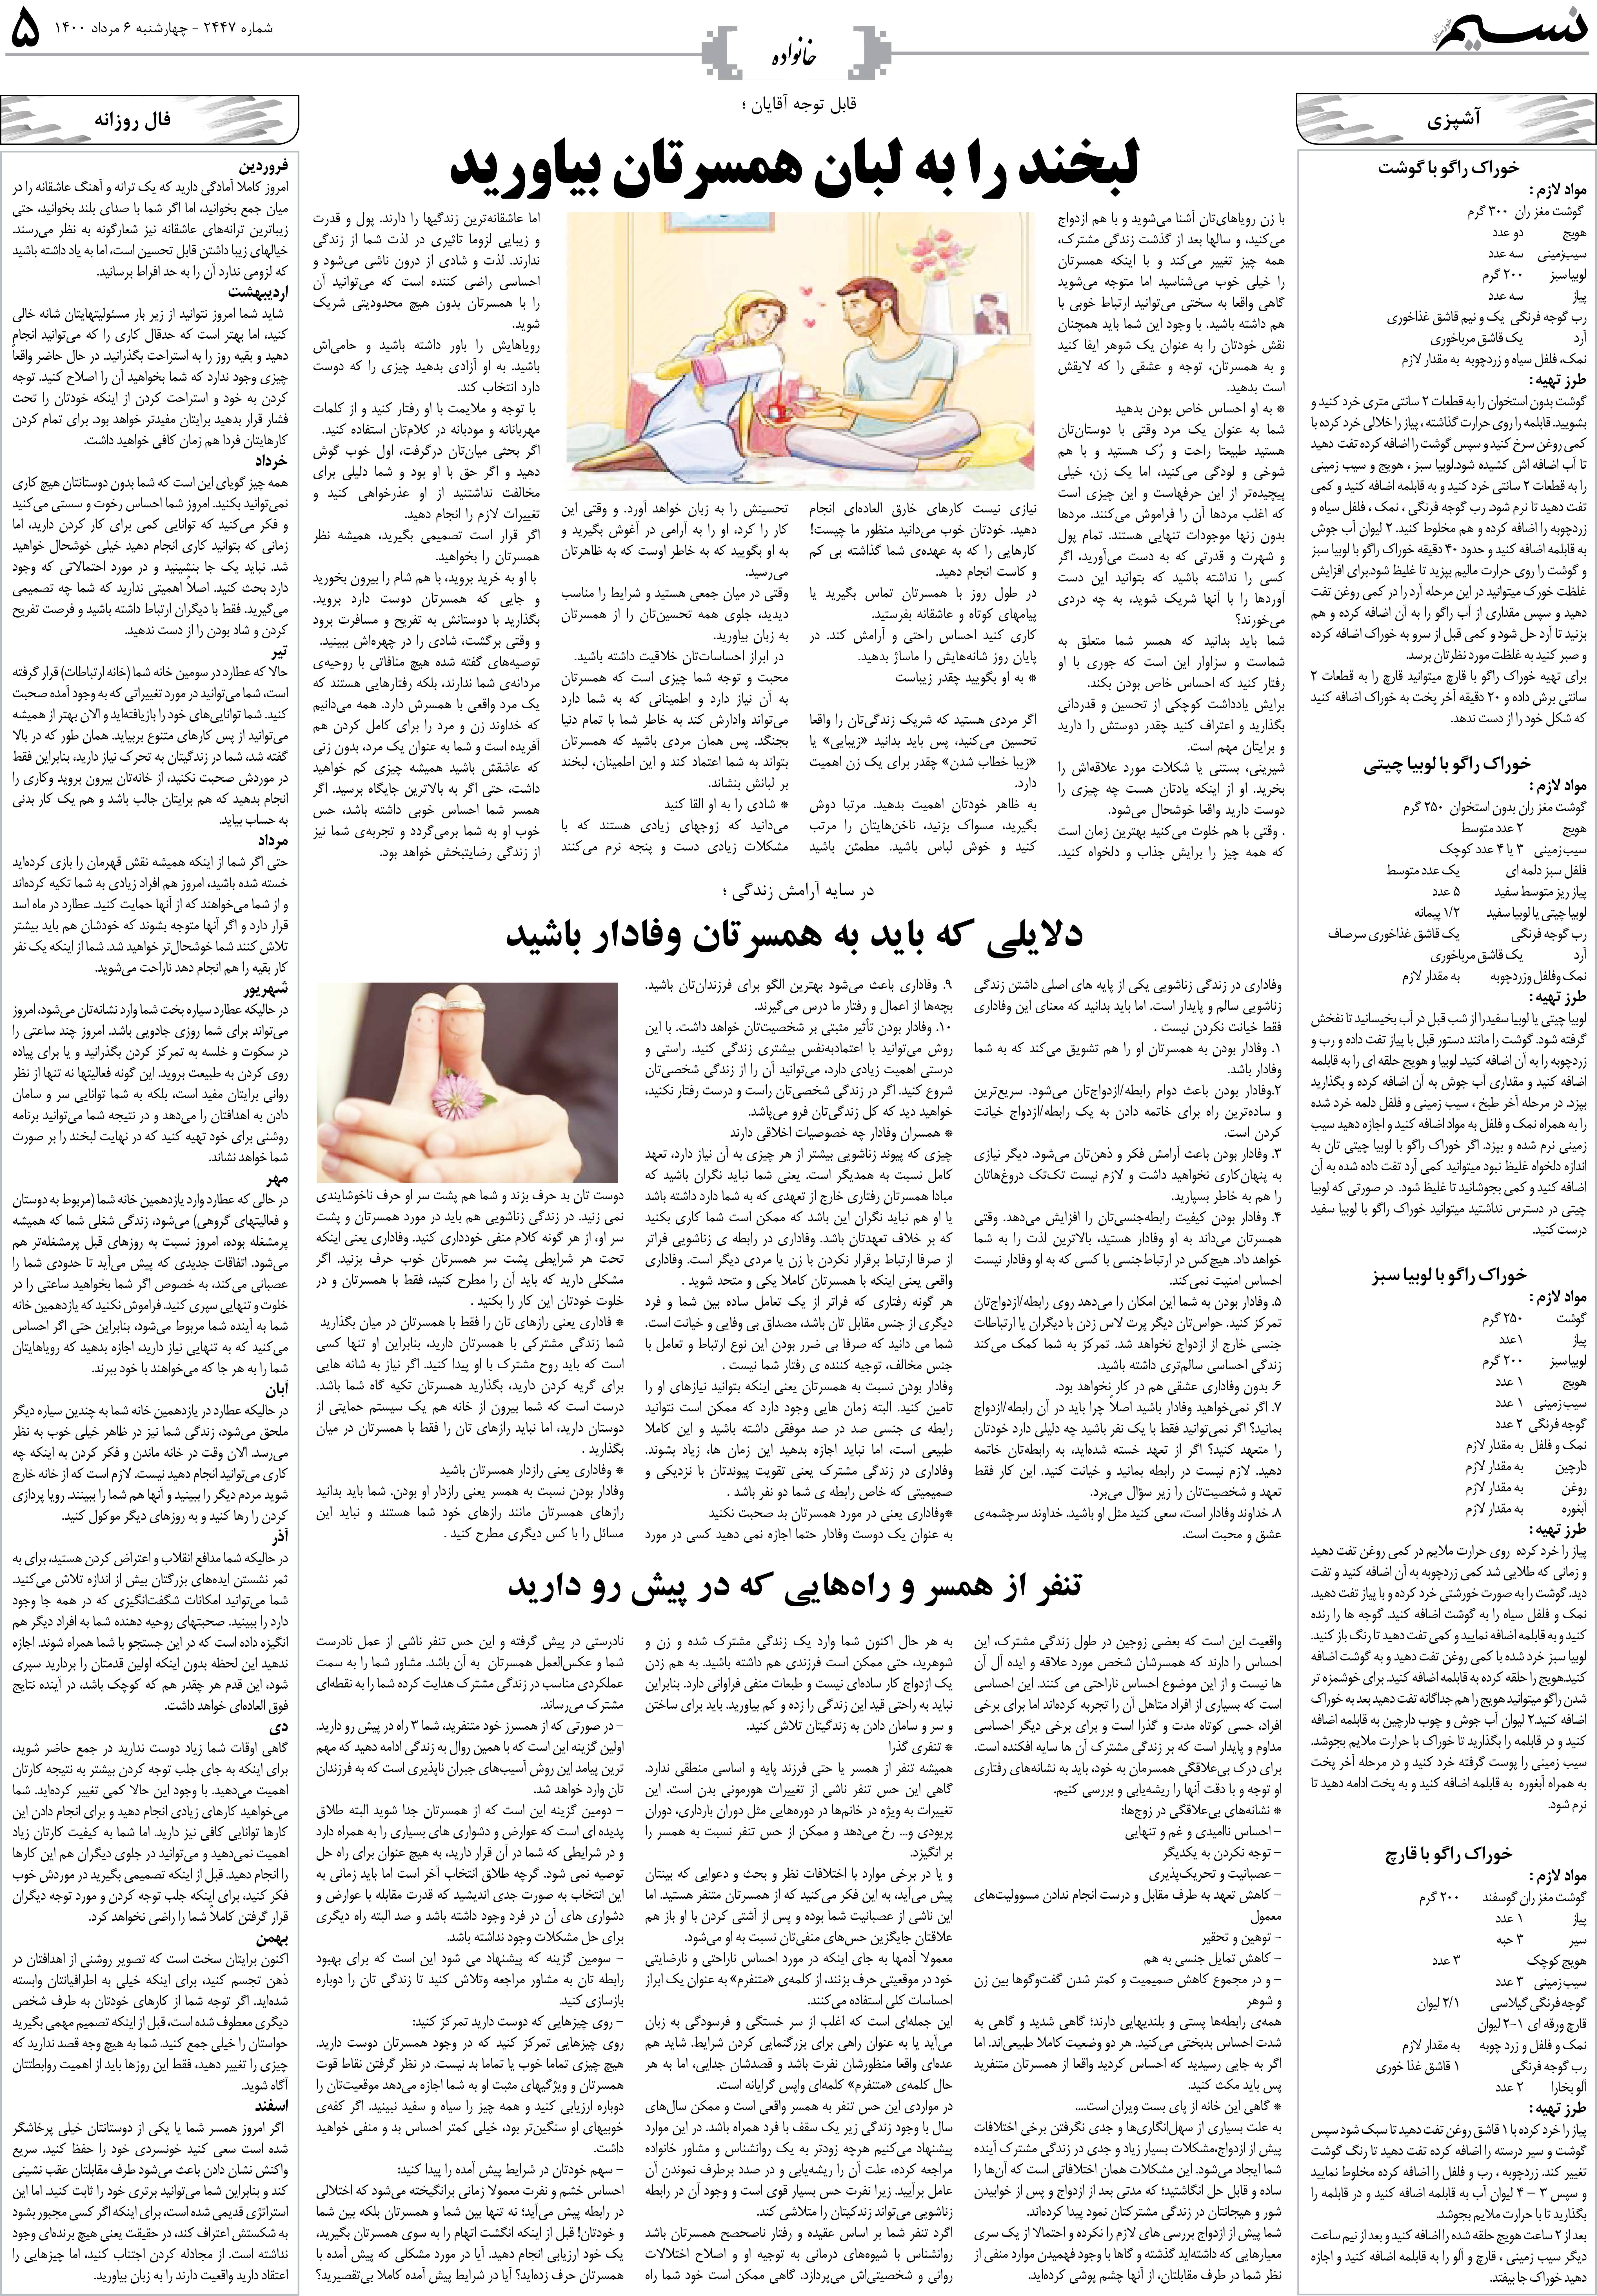 صفحه خانواده روزنامه نسیم شماره 2447